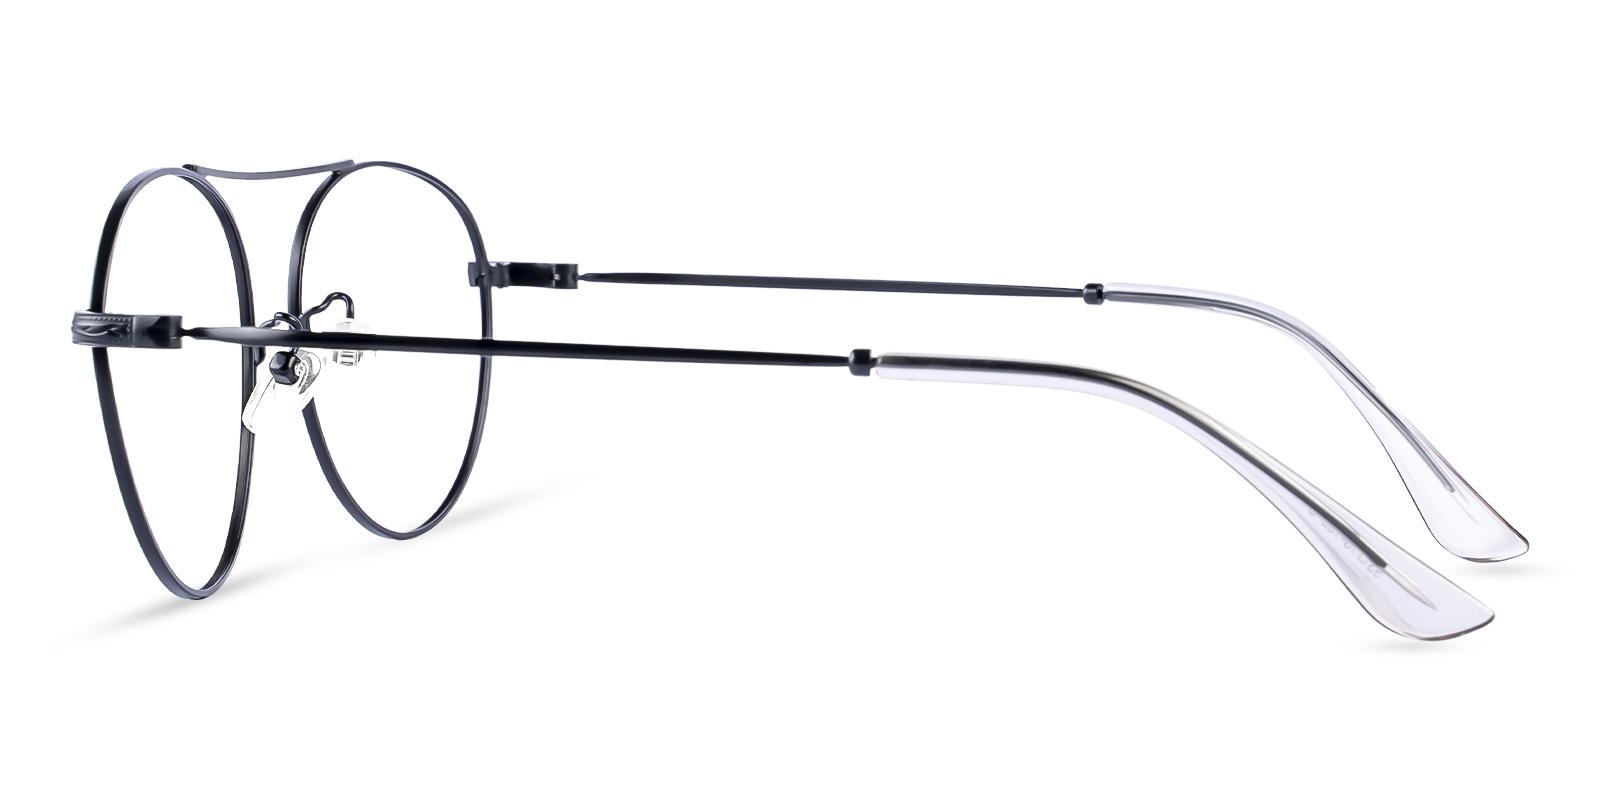 Ellie Black Metal Eyeglasses , NosePads Frames from ABBE Glasses